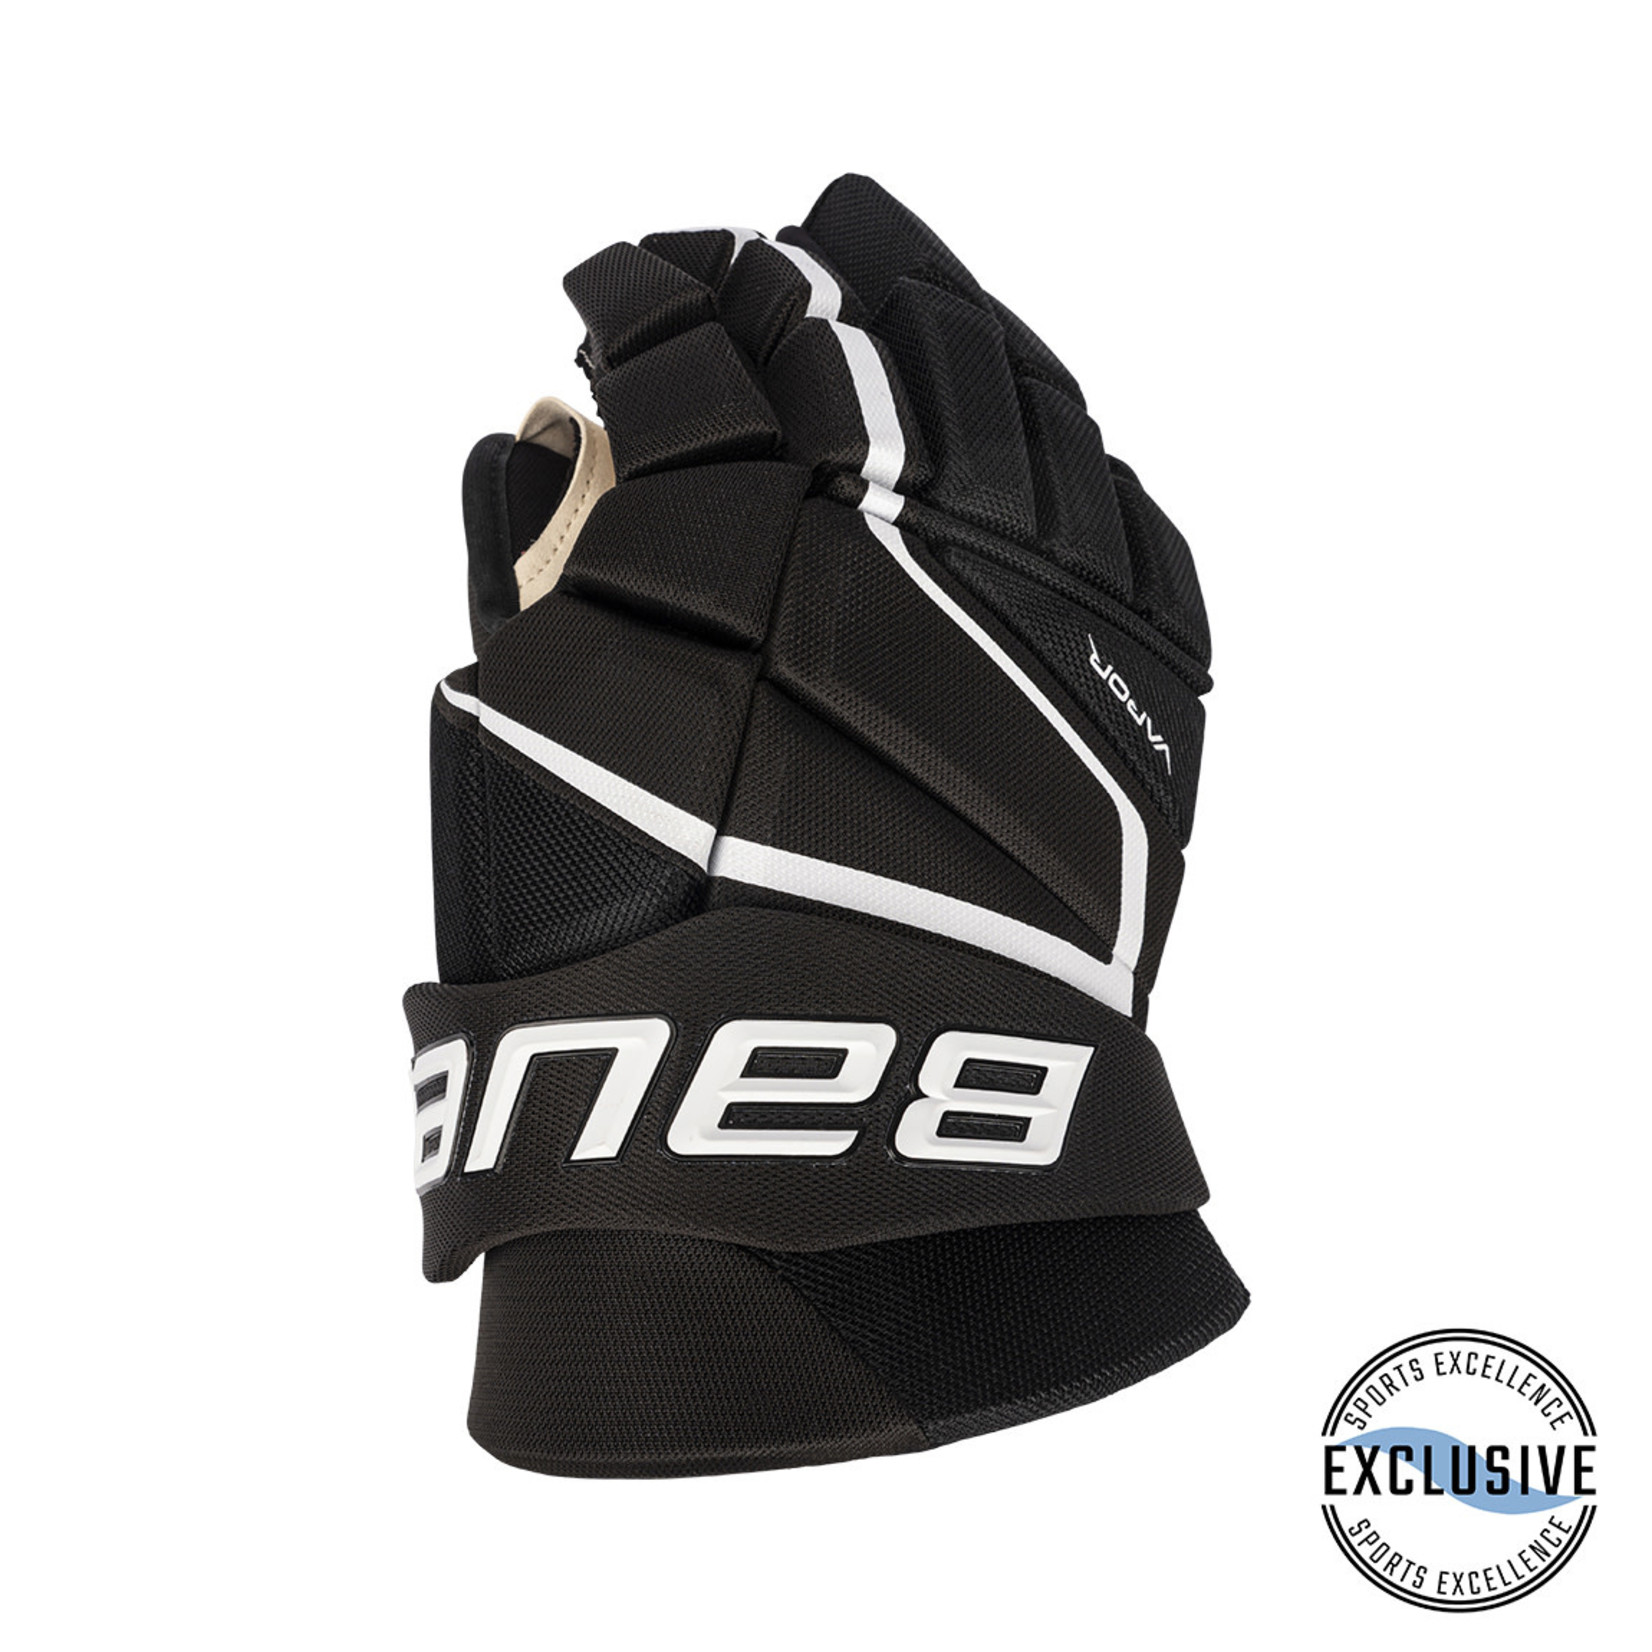 Bauer Bauer Hockey Gloves, Vapor X LTX Pro+, Senior